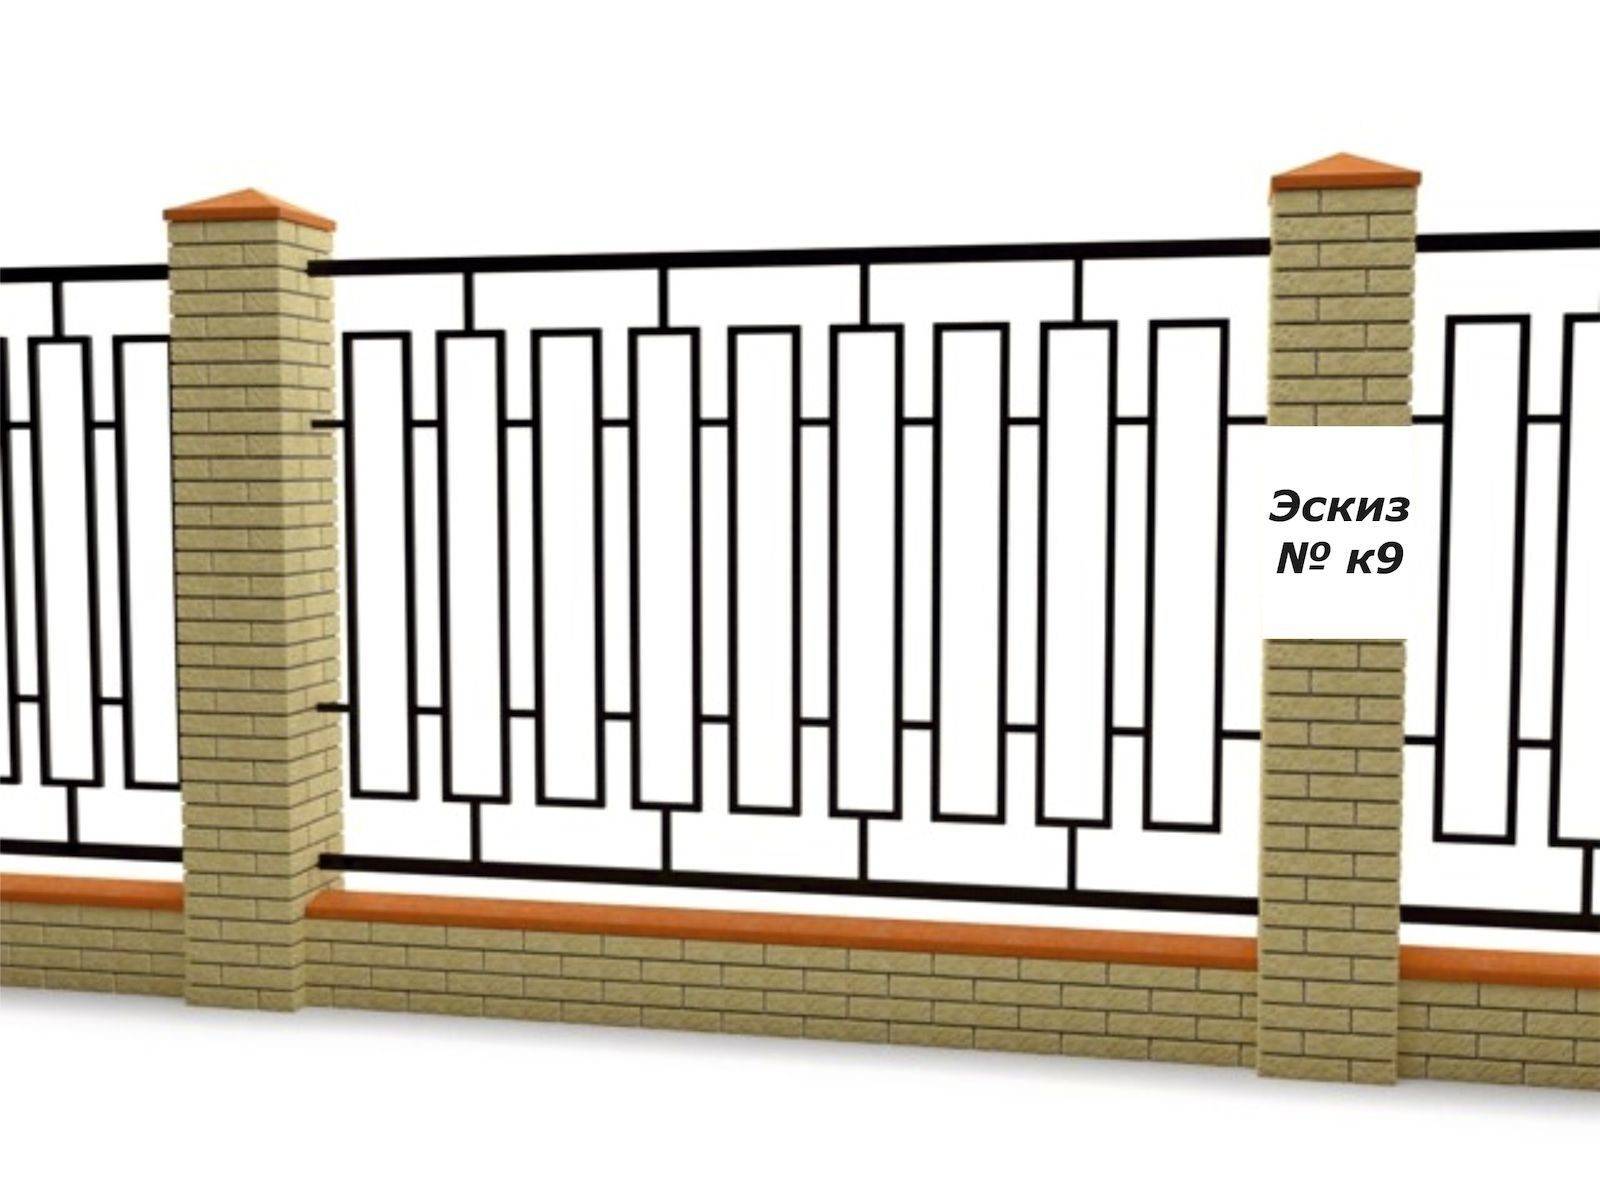 Как построить кирпичный забор своими руками, правила заливки фундамента, особенности кирпичной кладки для забора, защита кирпичного забора от влаги.